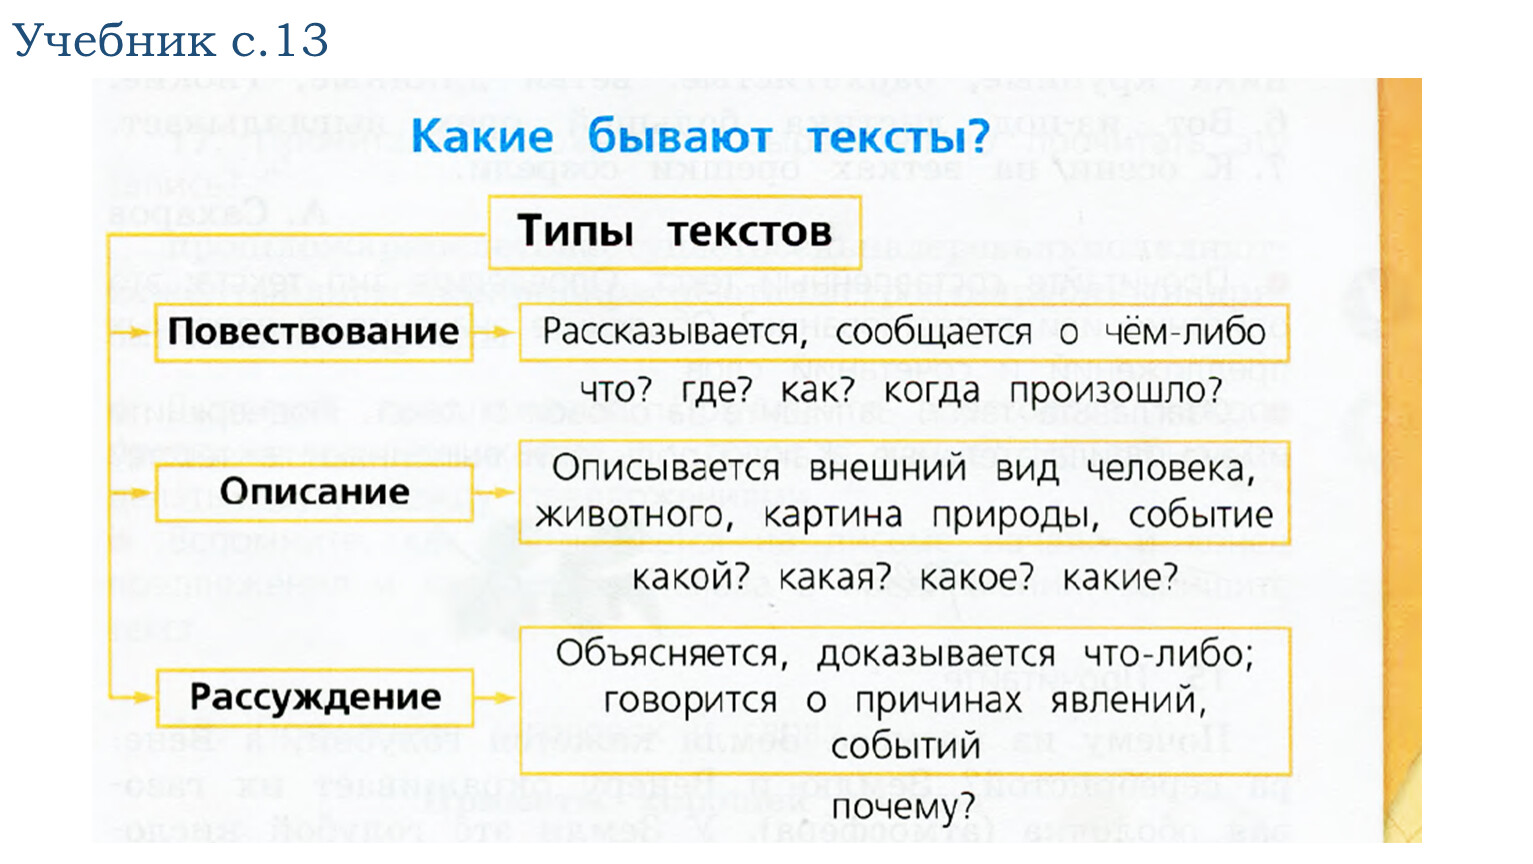 1 что такое тип текста. Типы текста в русском языке 3 класс таблица. Типы текста в русском языке таблица. Типы текста в русском языке 4. Типы текста 3 класс русский язык.